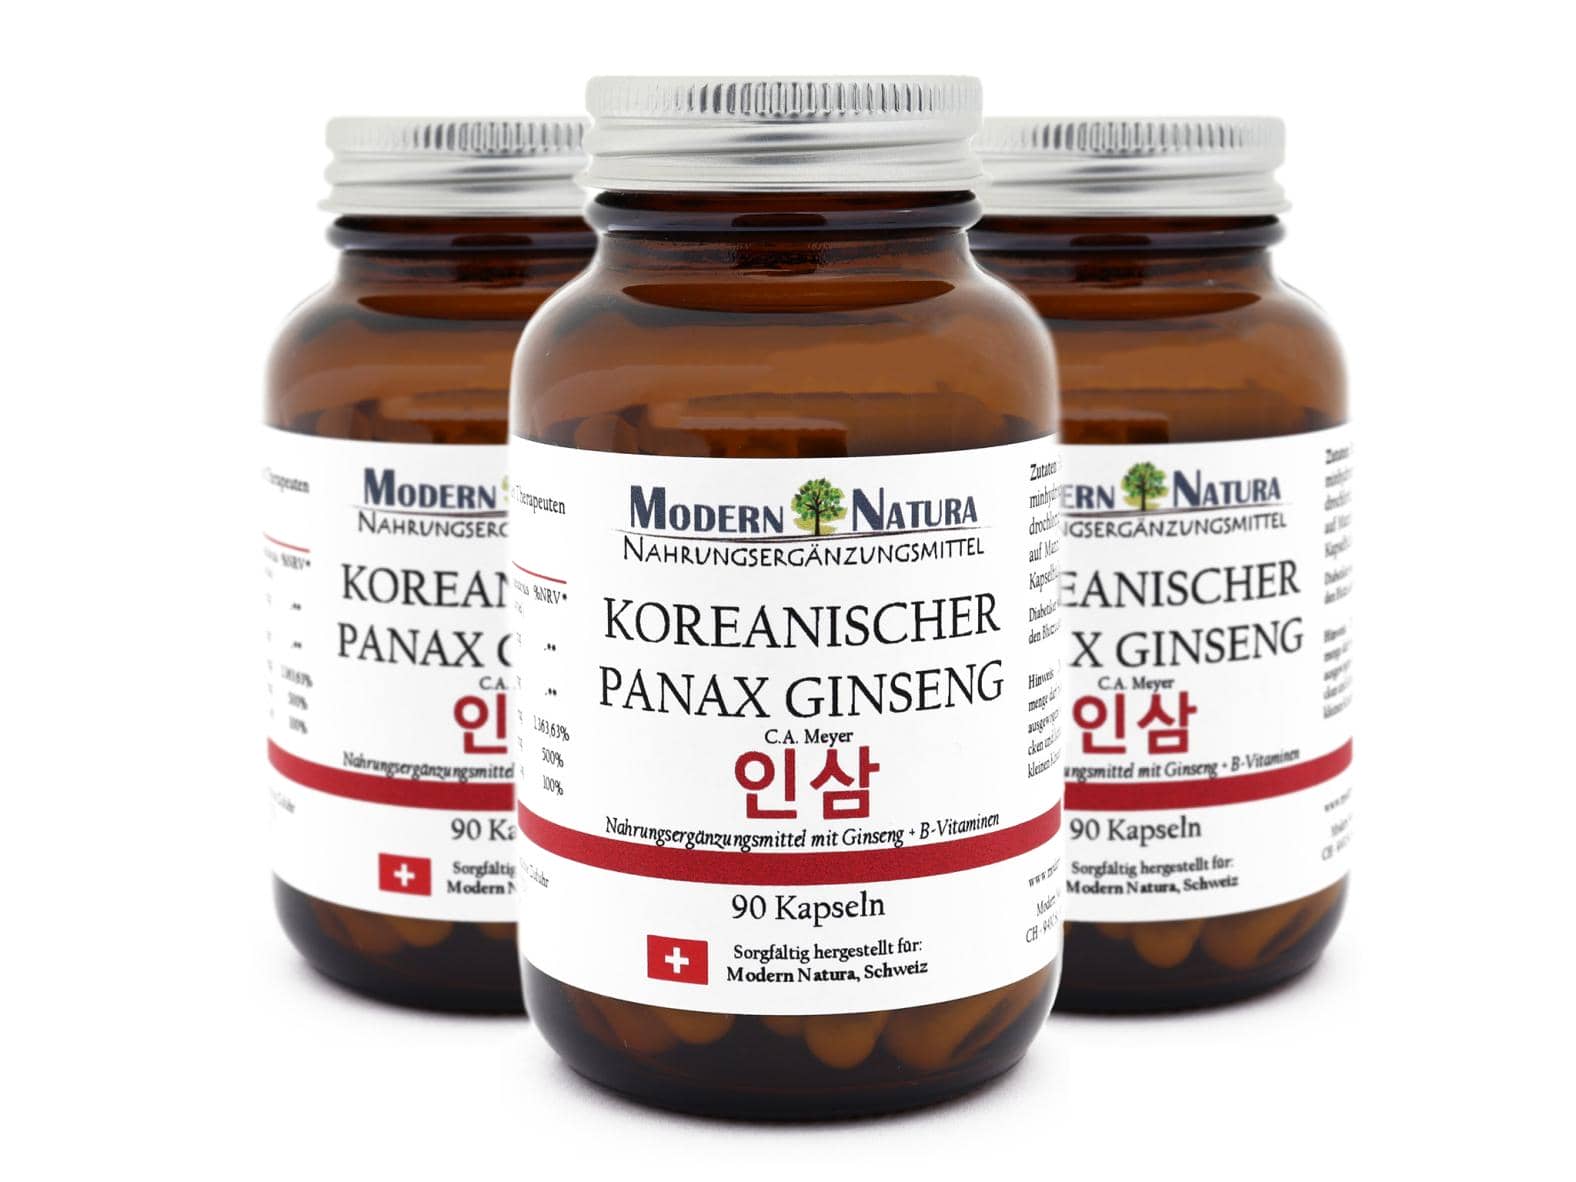 Koreanischer Panax Ginseng - Dreierpack (3x 90 Kapseln) Vegan & Glutenfrei - Ginsengextrakt mit B-Vitaminen (B1, B6 & B12) - Panax ginseng C. A. Meyer